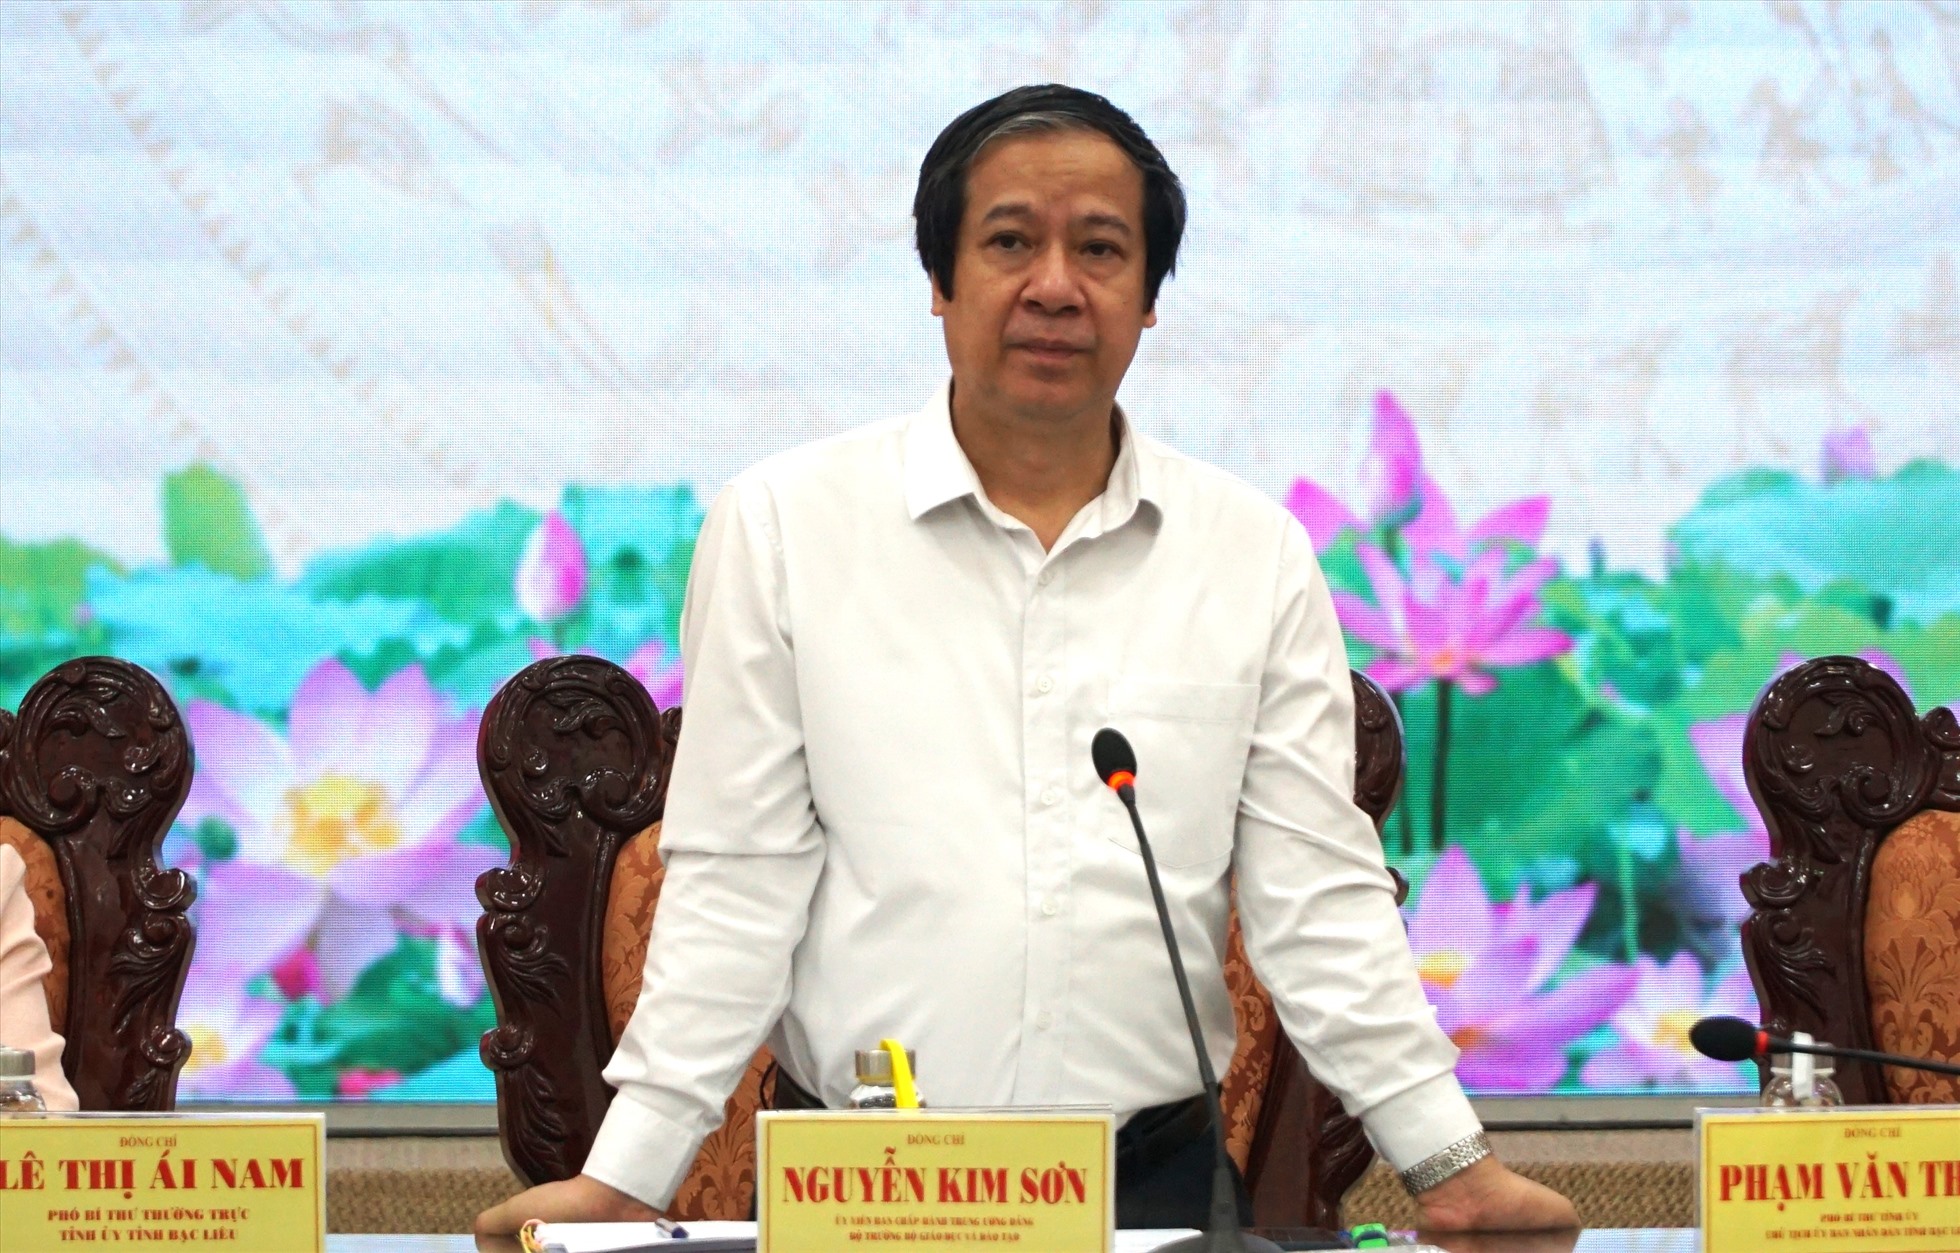 Bộ trưởng Bộ Giáo dục Đào tạo Nguyễn Kim Sơn Trưởng đoàn công tác Chính phủ cho rằng hai ngành kinh tế chủ lực của tỉnh Bạc Liêu là cây lúa, con tôm đang đứng trước thách thức lớn về biến đổi khí hậu.Ảnh: Nhật Hồ